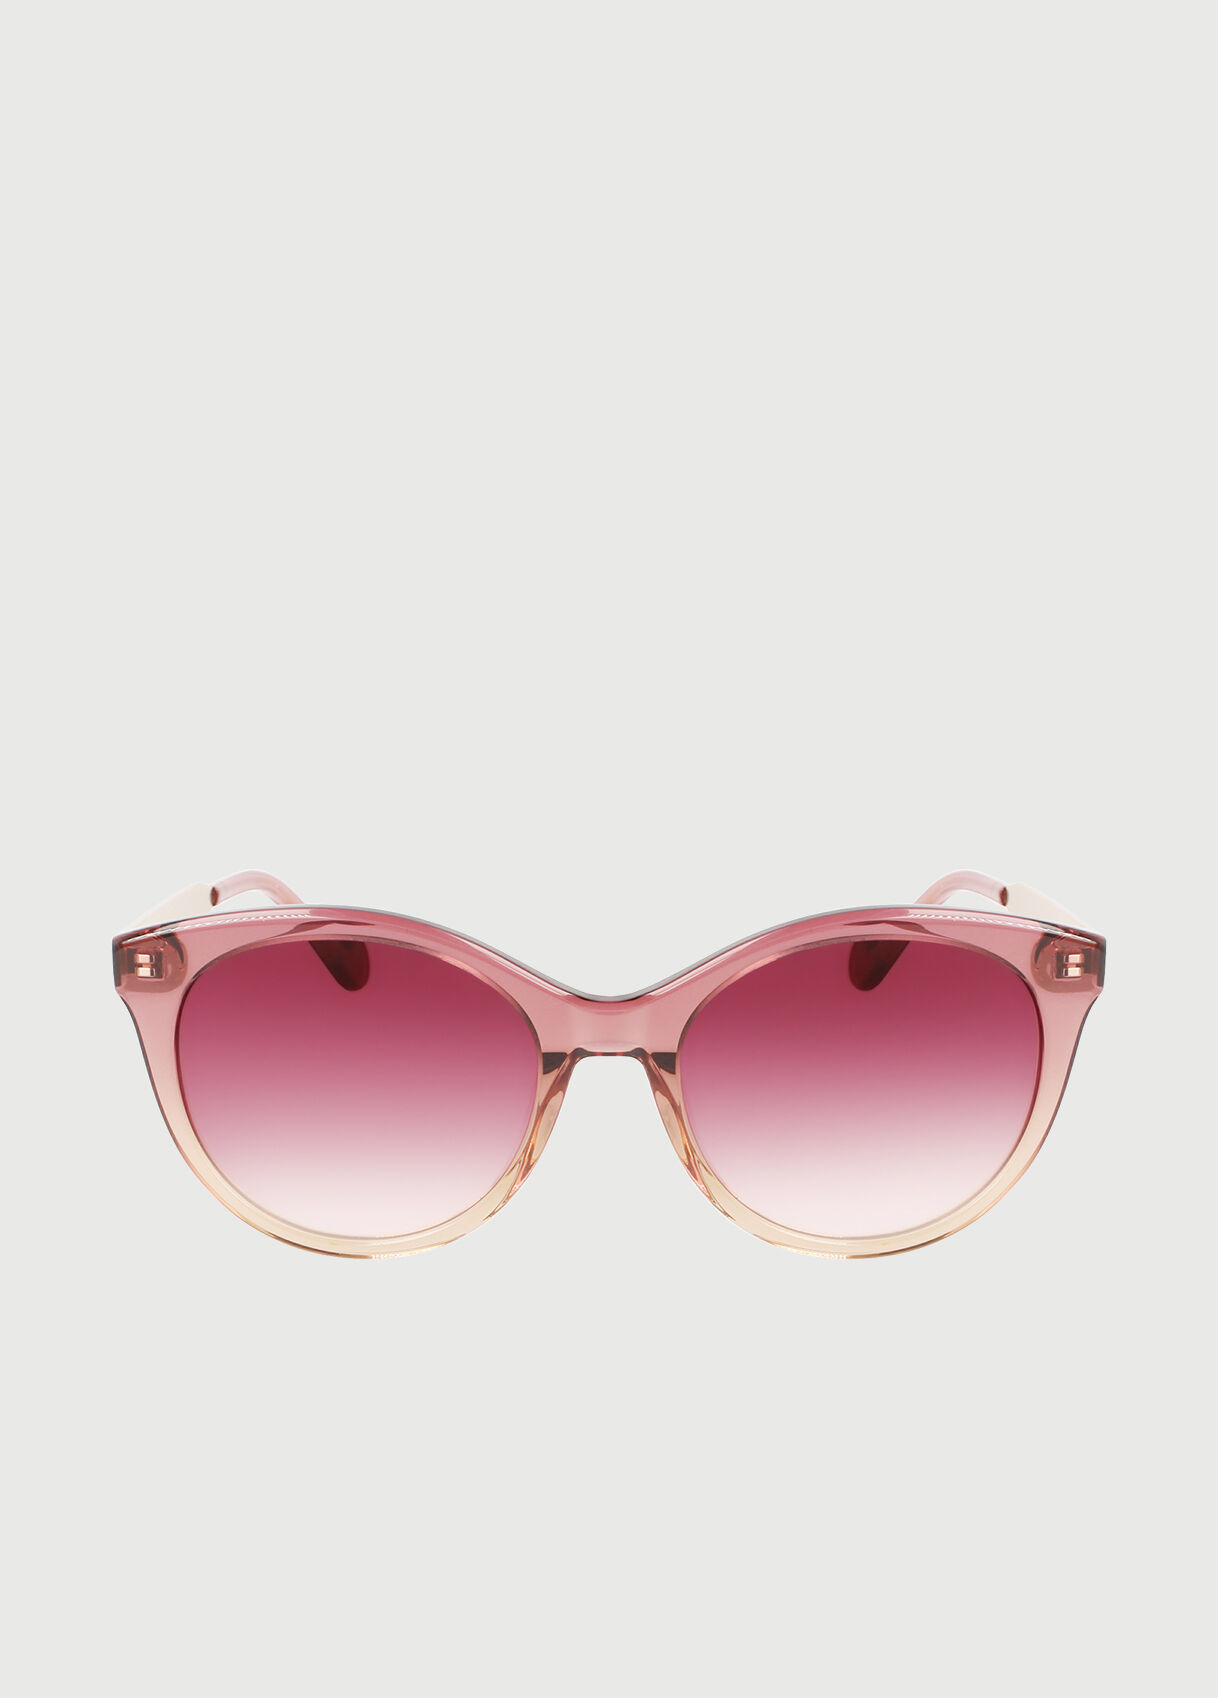 Women's Italian Designer Sunglasses: Elegant, Square & Round | LIU JO